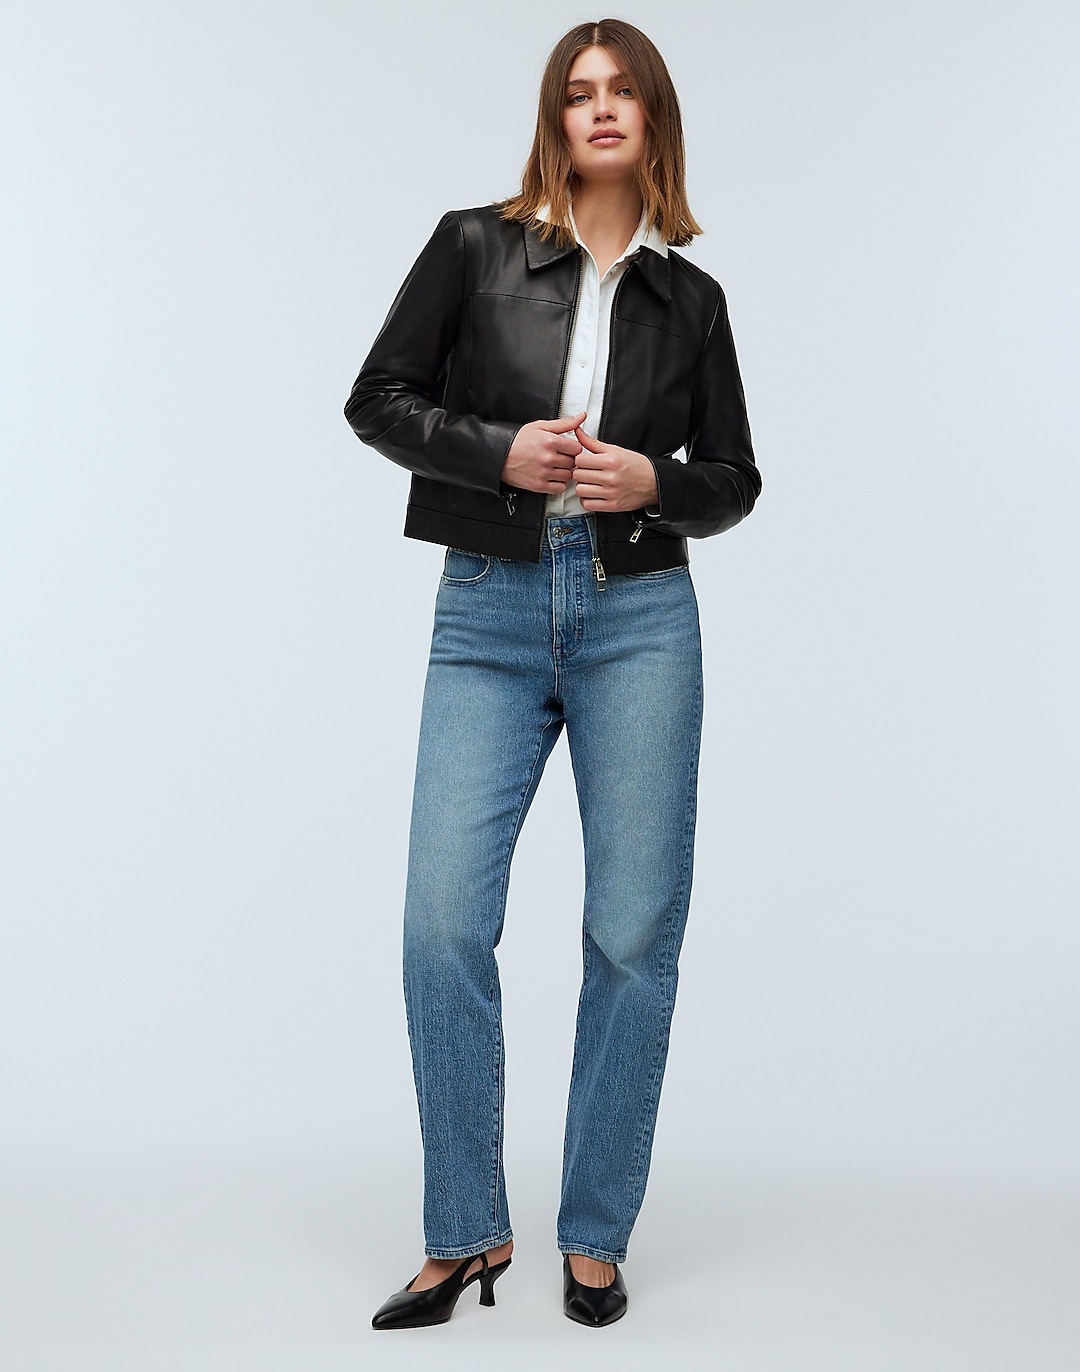 Shrunken Zip-Front Jacket in Leather | Madewell